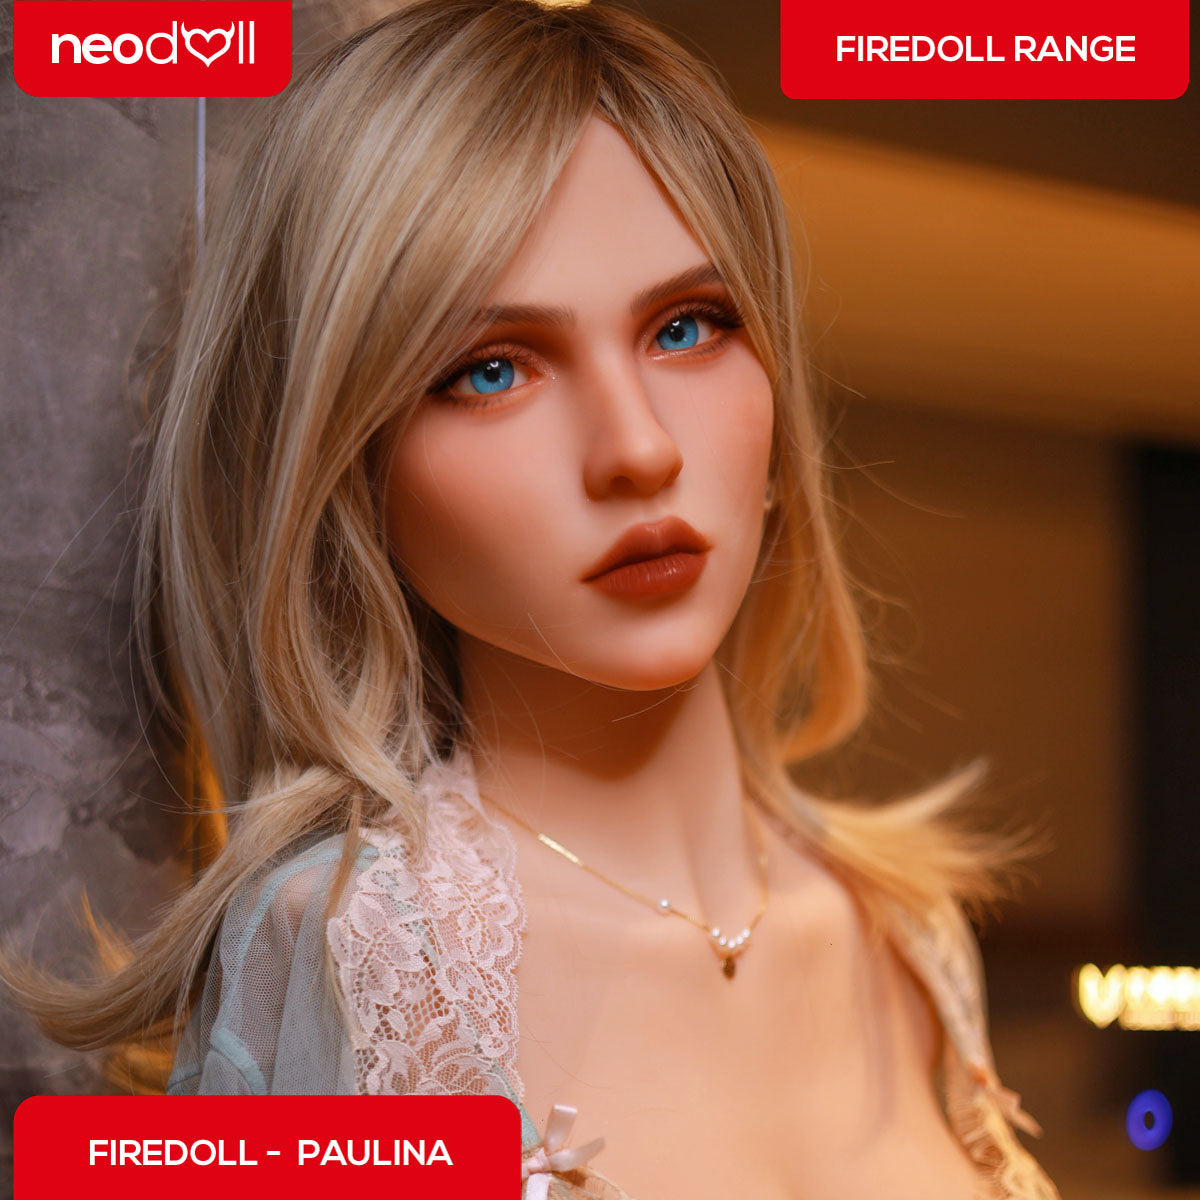 Firedoll Torso - Paulina - Realistic Sex Doll Torso - Light tan